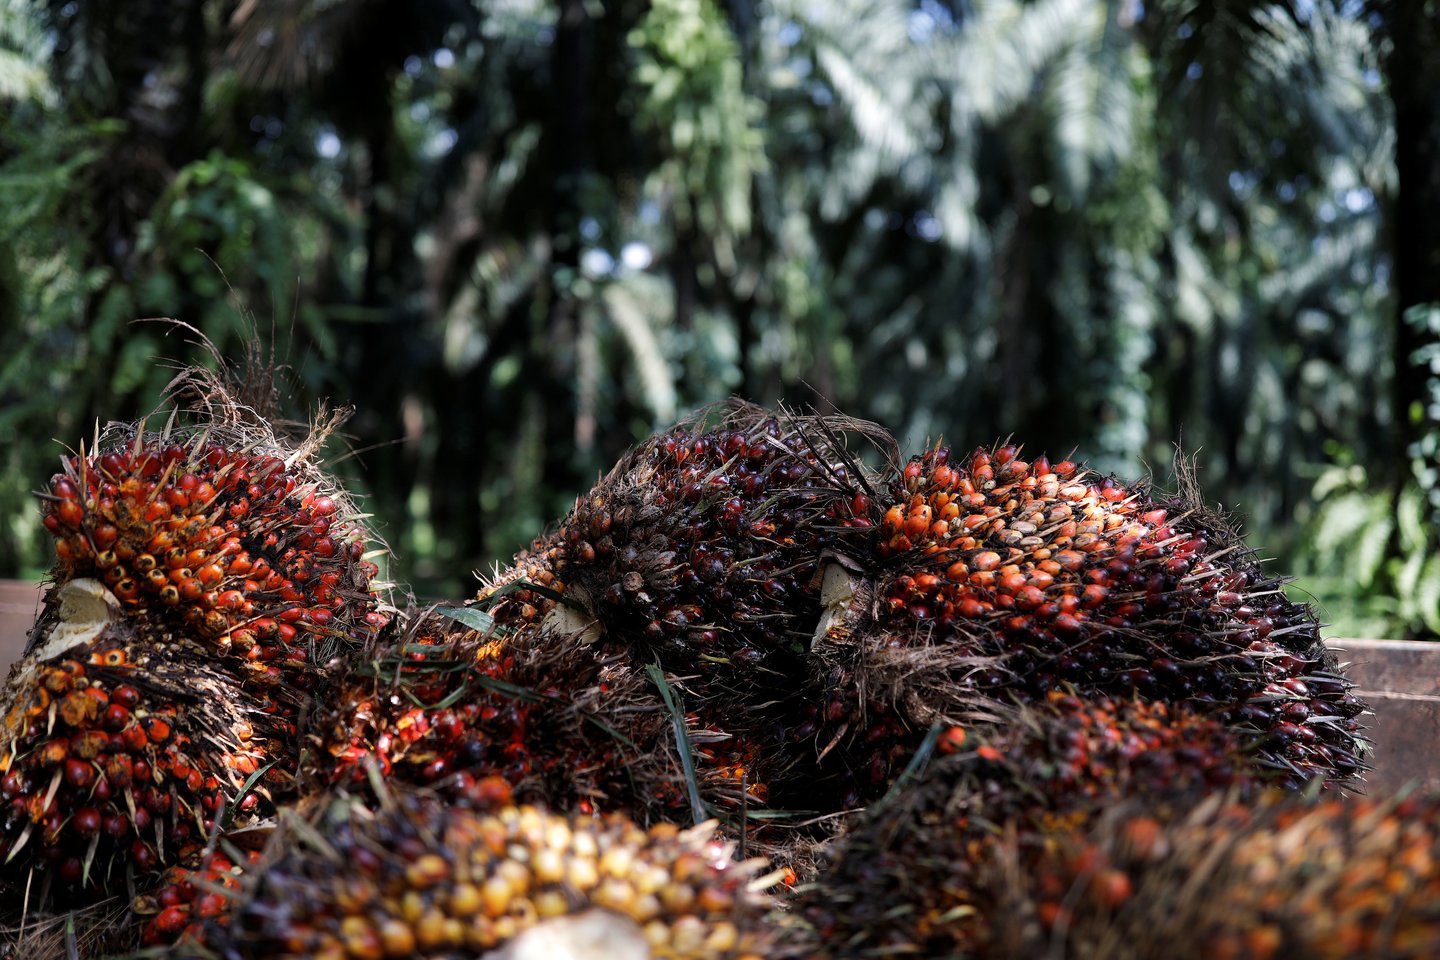 Tarptautinės palmių aliejaus kainos kyla jau tris mėnesius iš eilės ir tai skatina didelė importo paklausa pasaulio rinkose.<br>„AFP/Scanpix“ nuotr.